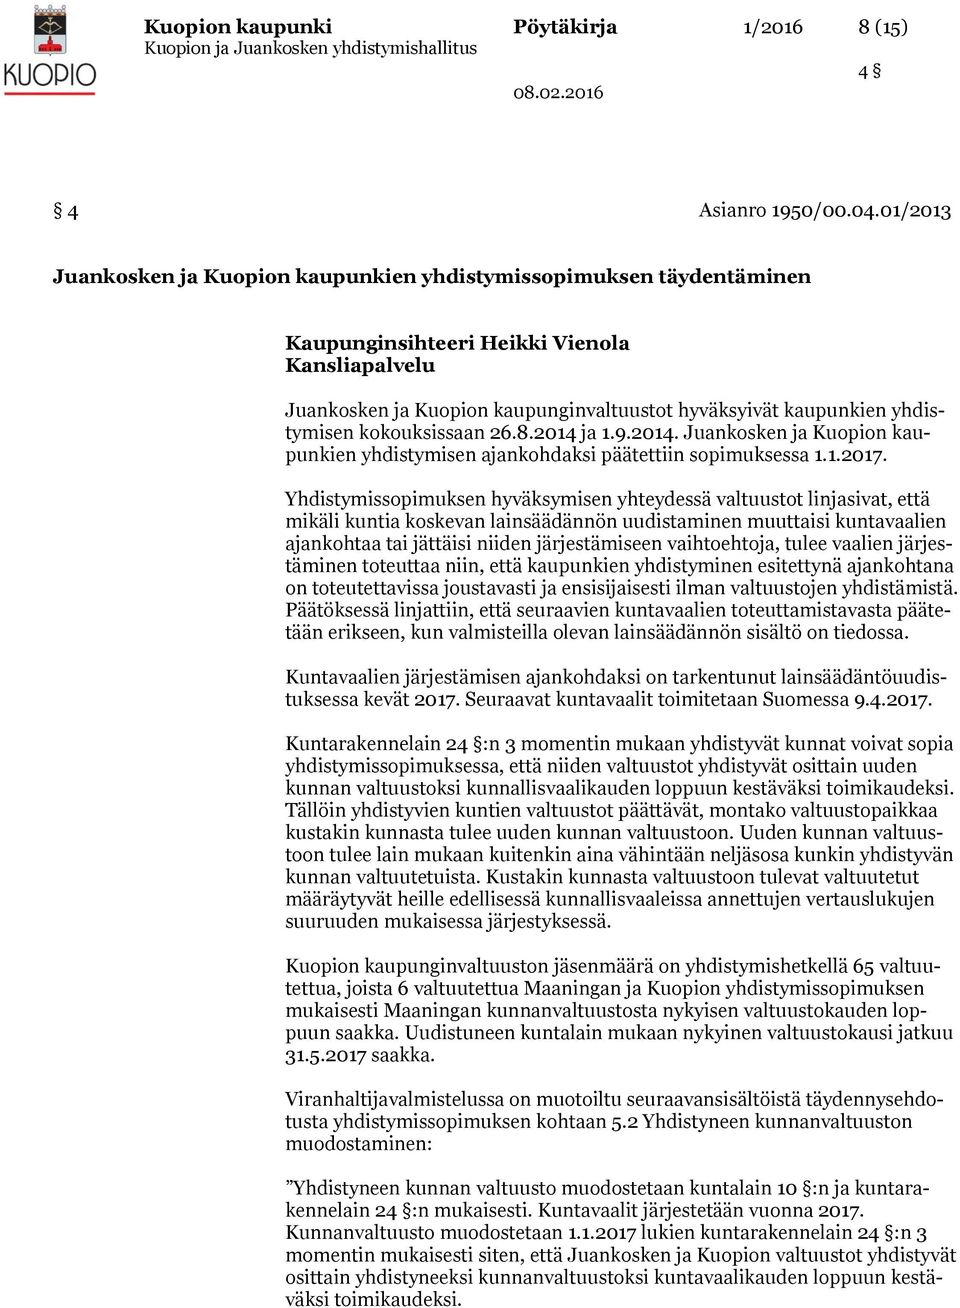 yhdistymisen kokouksissaan 26.8.2014 ja 1.9.2014. Juankosken ja Kuopion kaupunkien yhdistymisen ajankohdaksi päätettiin sopimuksessa 1.1.2017.